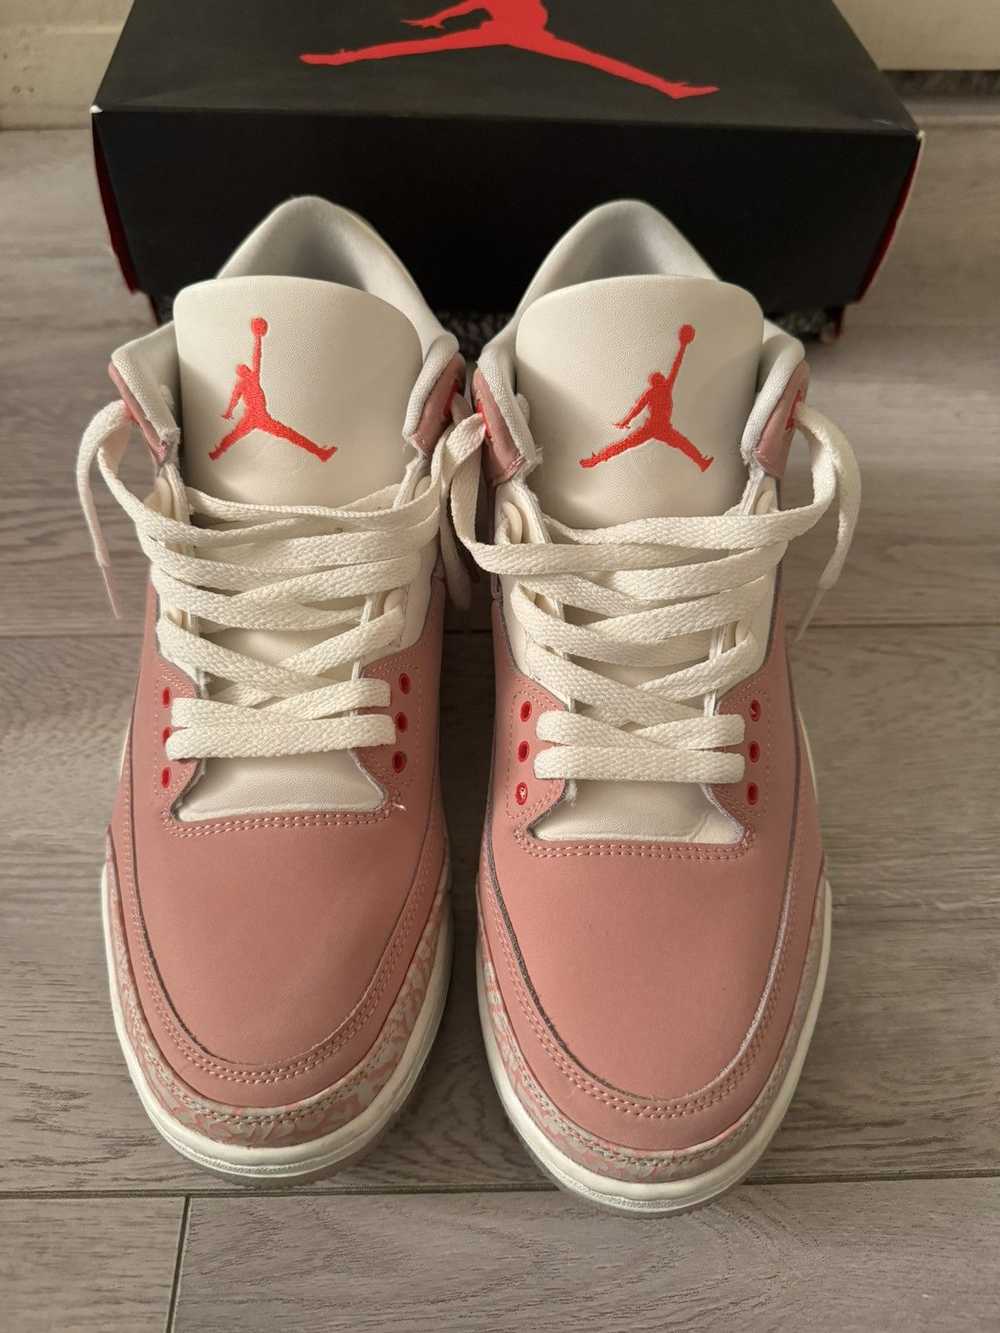 Jordan Brand × Nike Air Jordan 3 “Rust Pink” - image 5